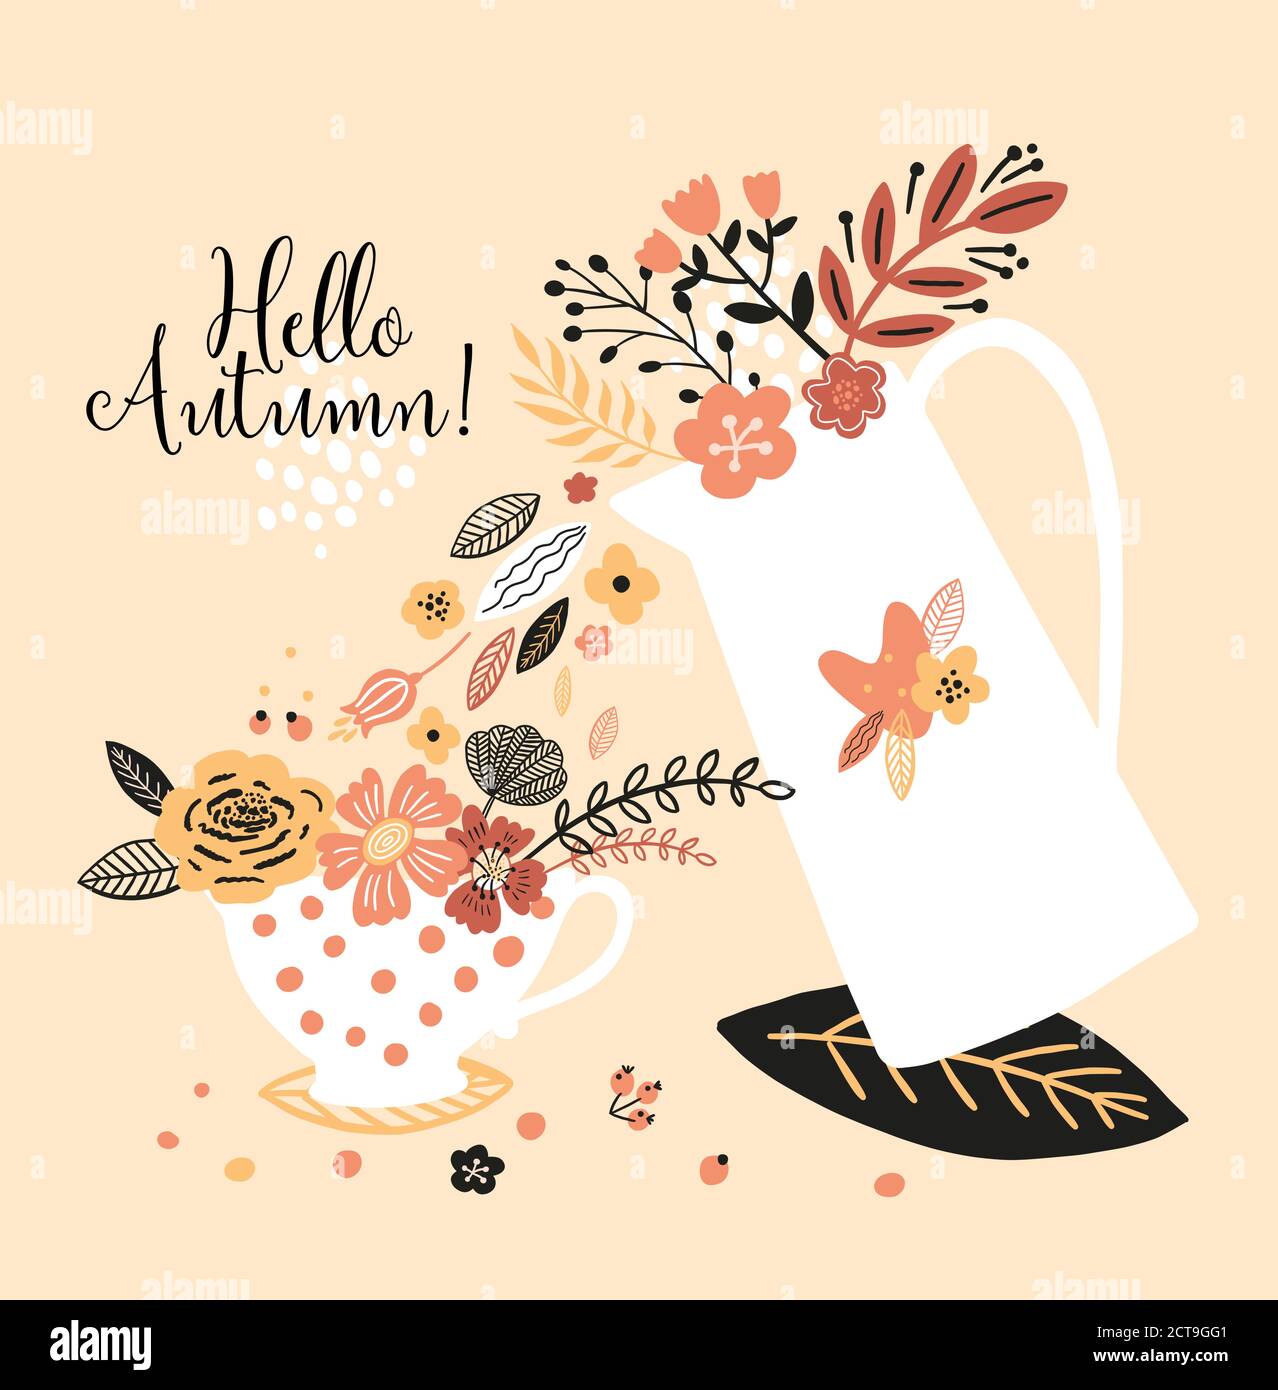 Bella carta autunnale con un bollitore, una tazza, fiori, foglie e con l'iscrizione Ciao autunno. Perfetto per biglietti d'auguri, cartoline, t-shirt Illustrazione Vettoriale